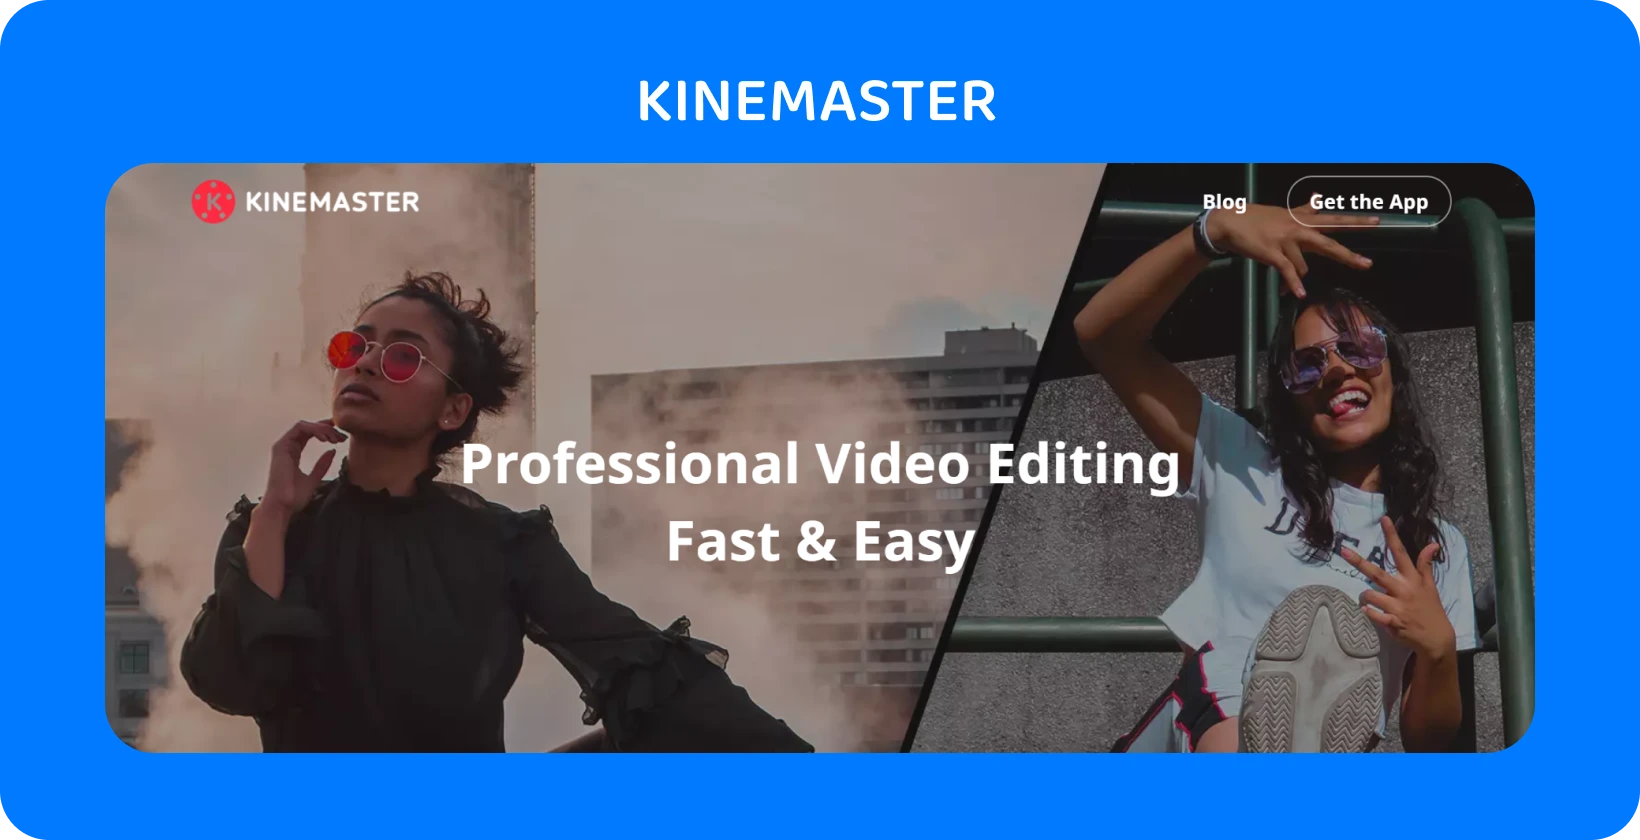 KineMaster reklamu na aplikáciu s dvoma modelmi, ktoré pózujú, zdôrazňujúc profesionálnu úpravu videa, ktorá je rýchla a jednoduchá.